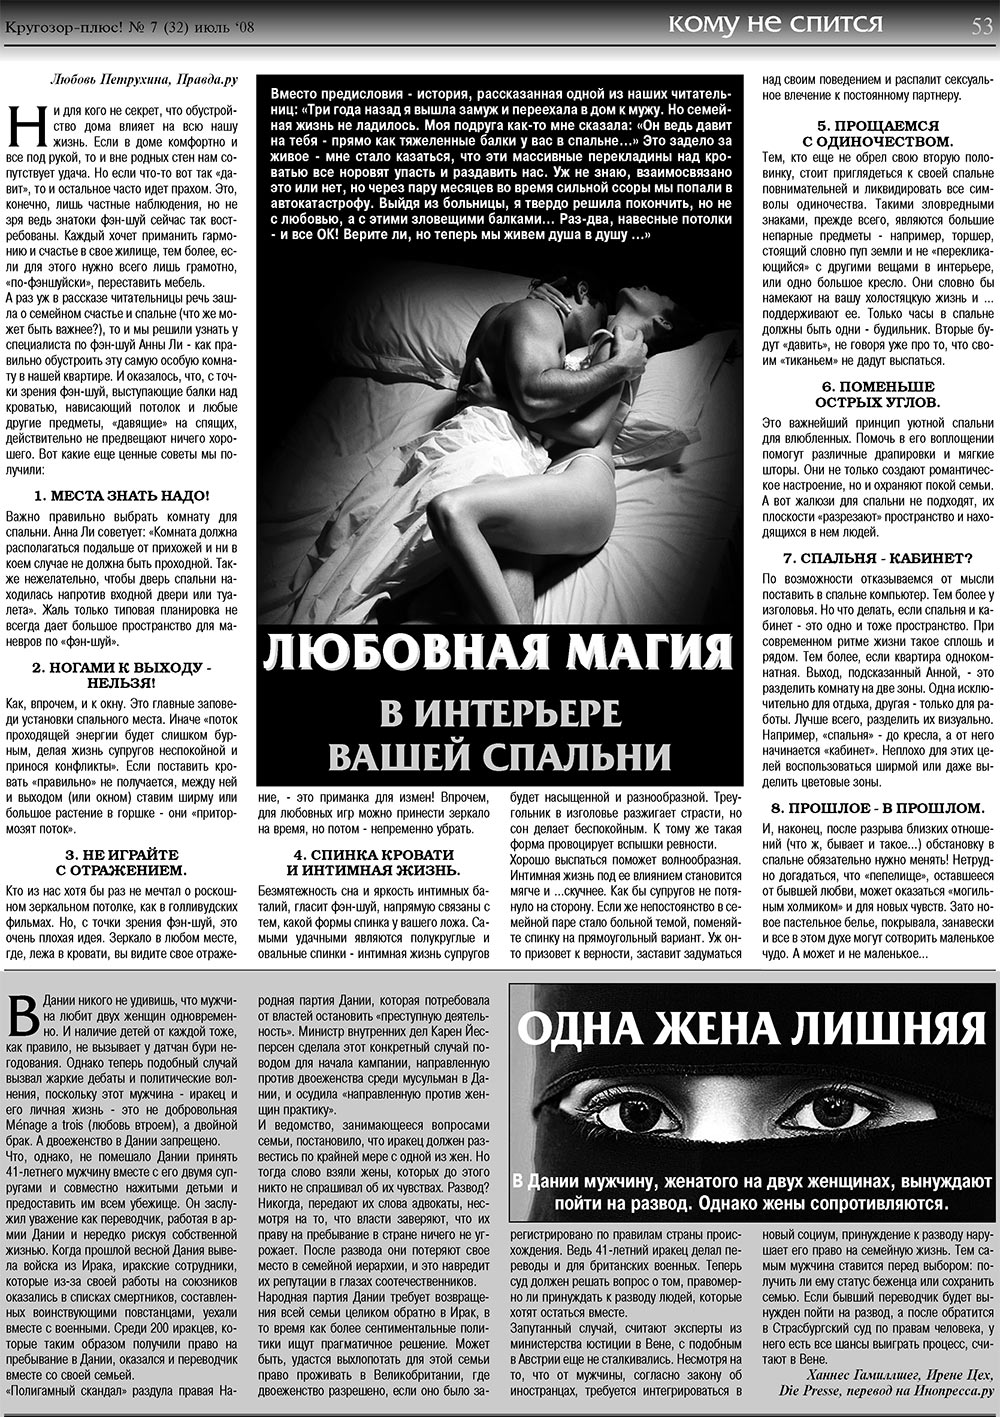 Кругозор плюс!, газета. 2008 №7 стр.53